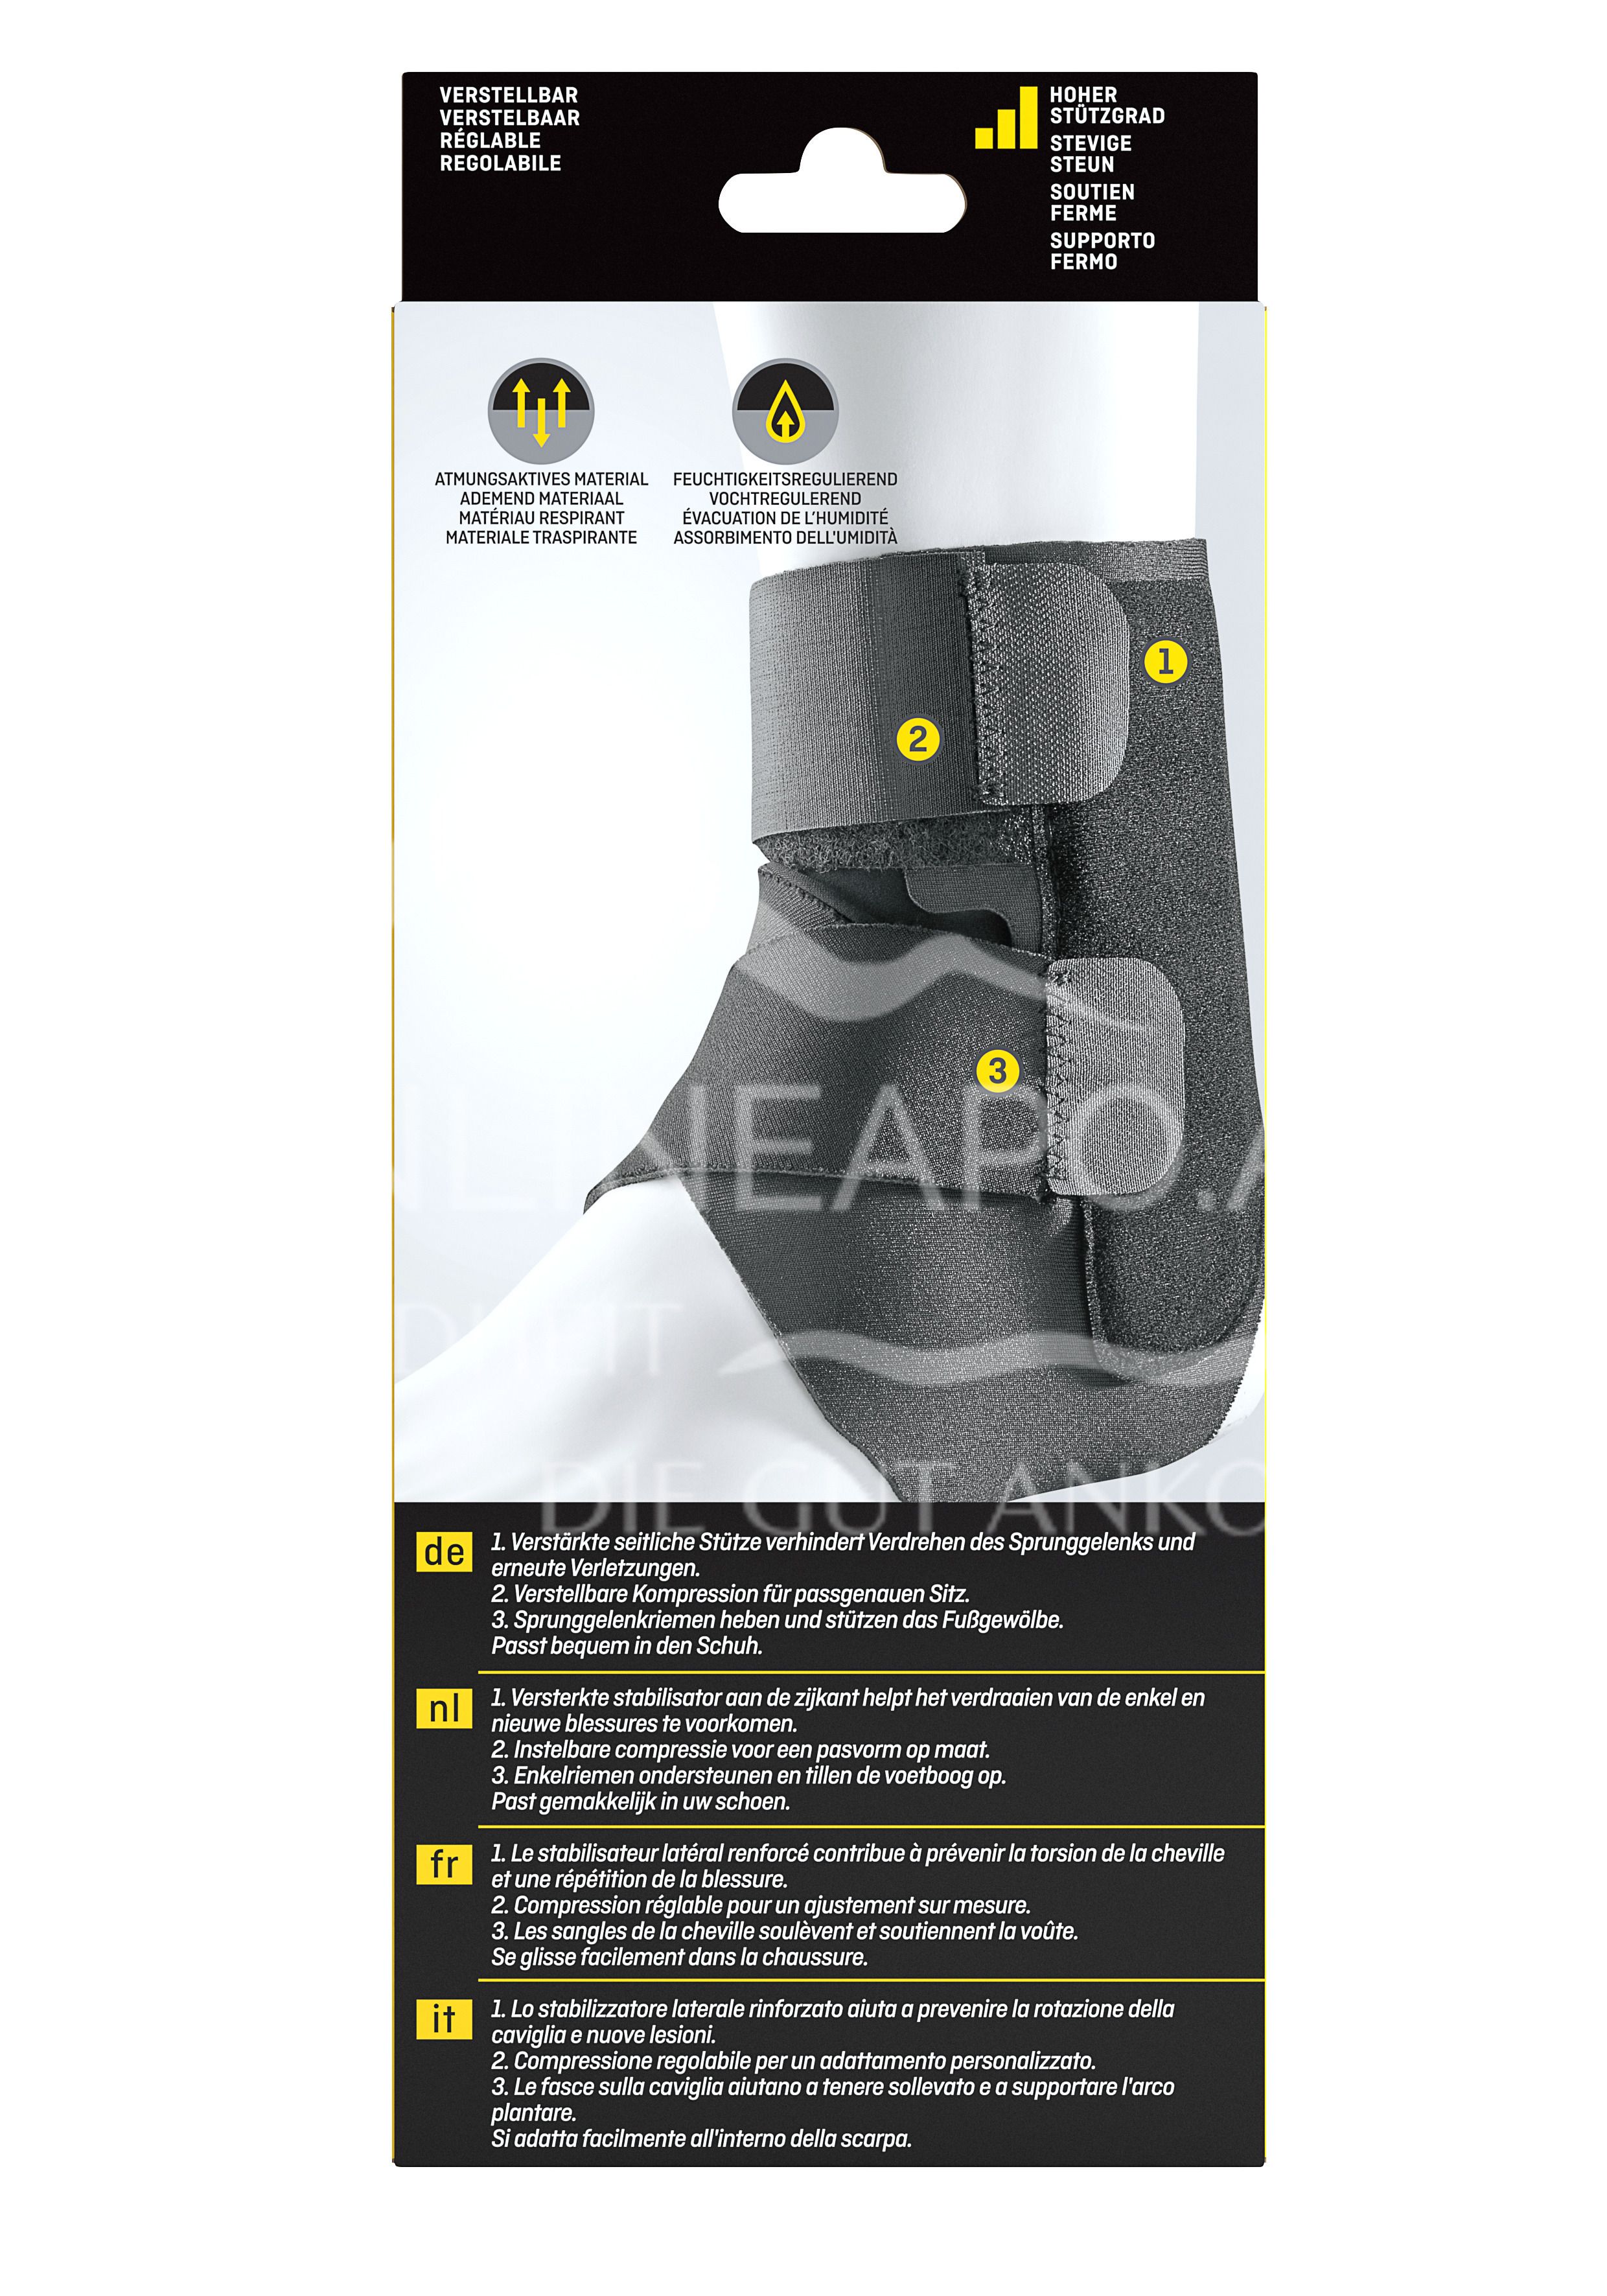 3M FUTURO™ Stabilisierende Sprunggelenk-Bandage anpassbar 46645, Verstellbar SPORT (20.3 - 25.4 cm)